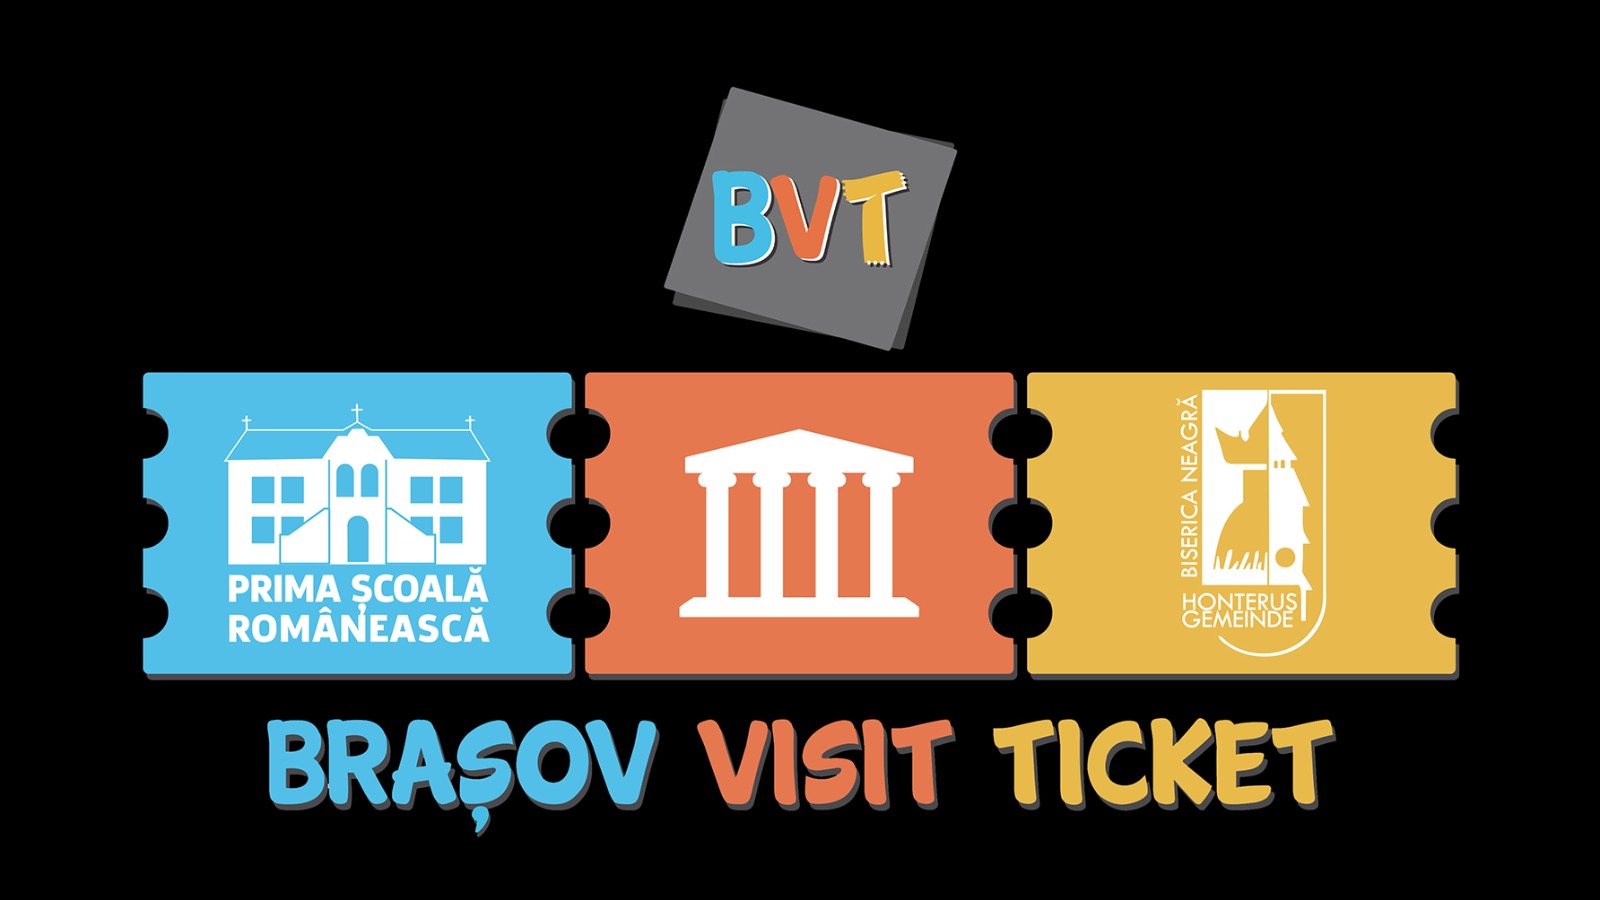 Brașov Visit Ticket